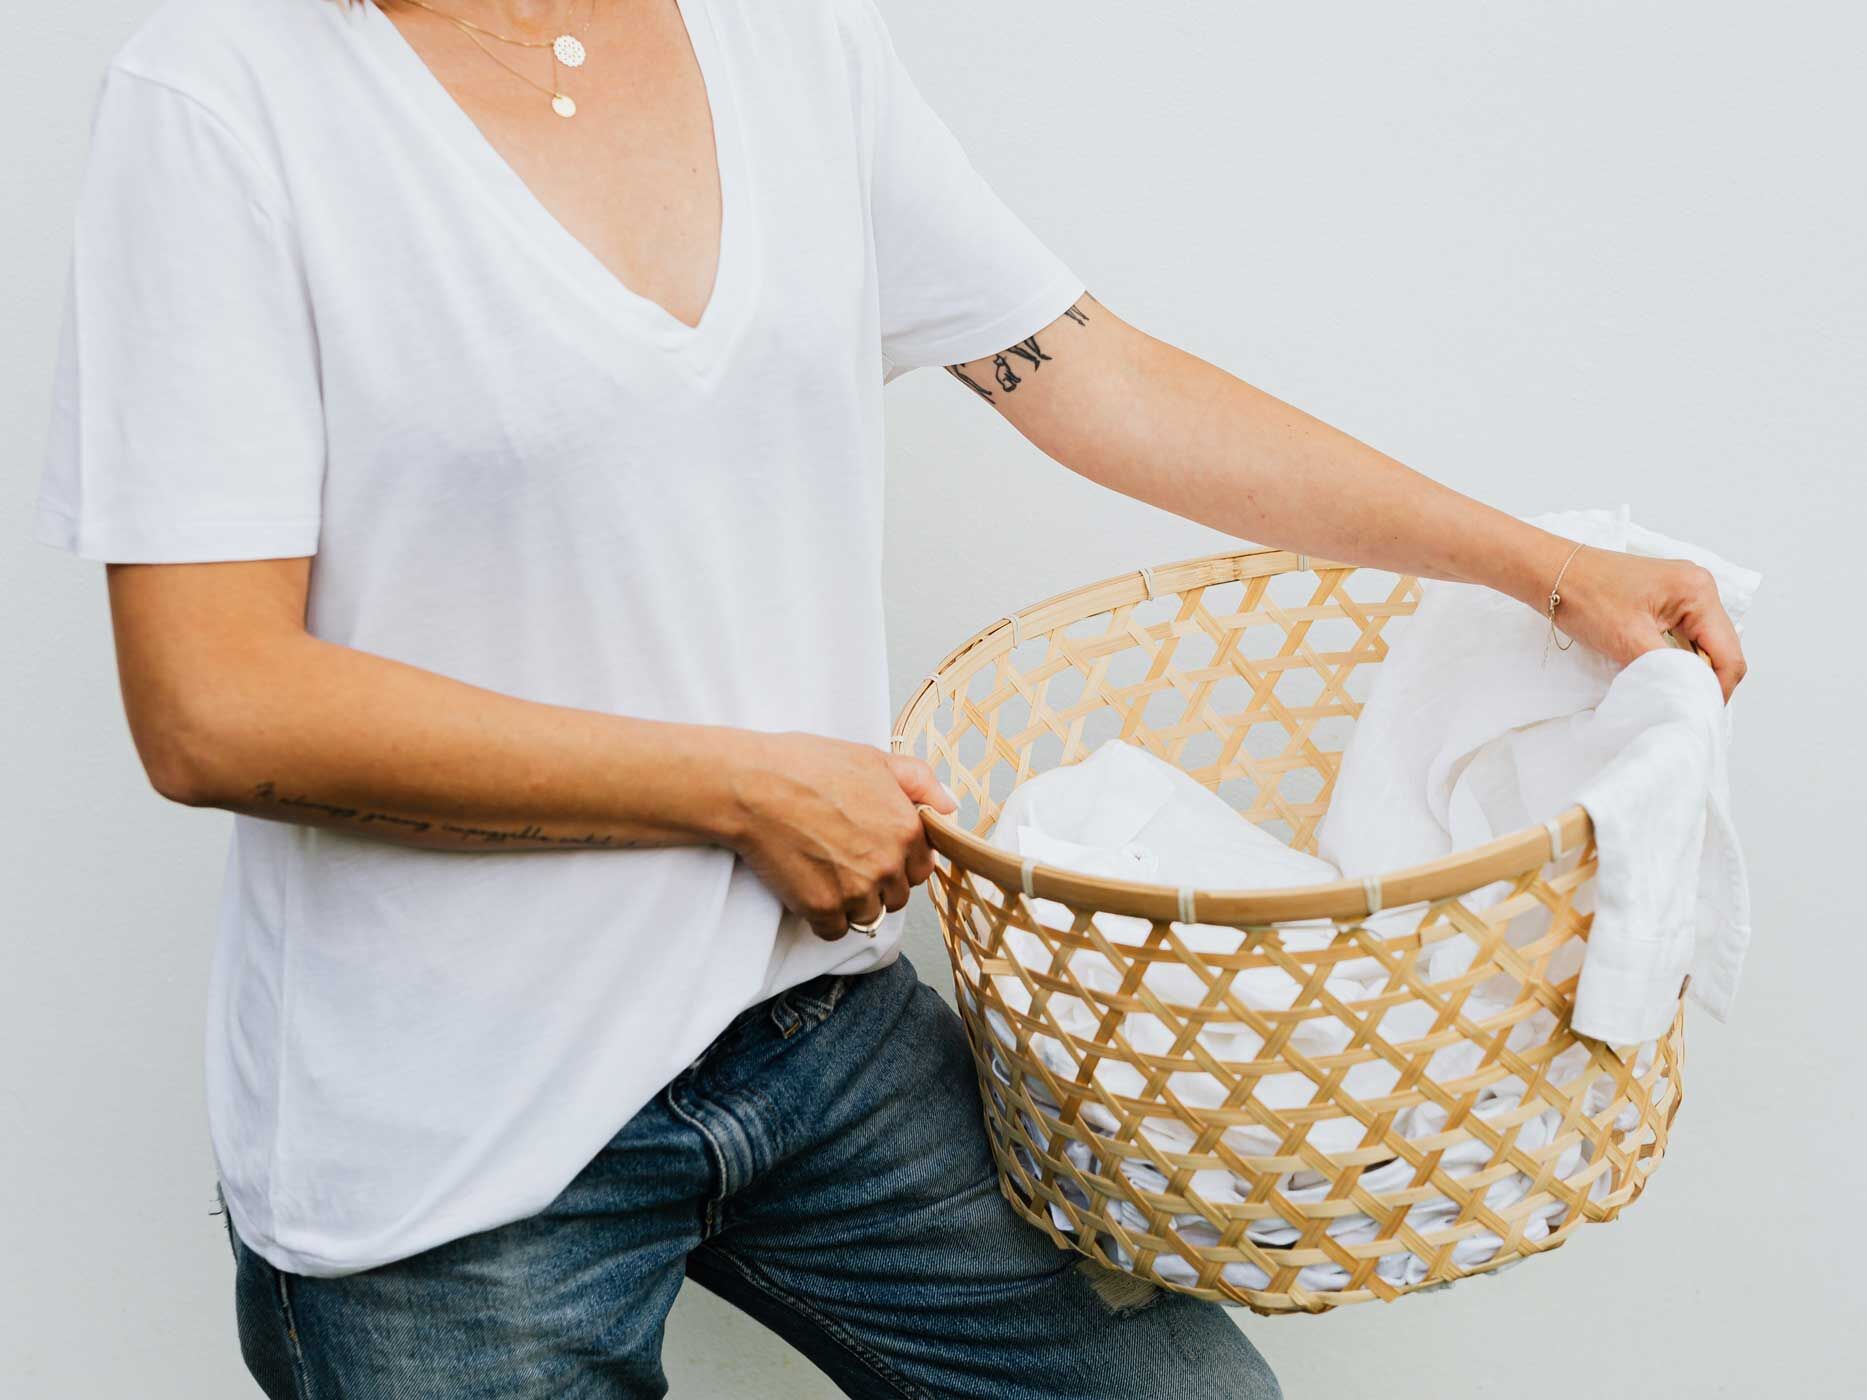 Frau im weißen Shirt mit einem Wäschekorb in der Hand